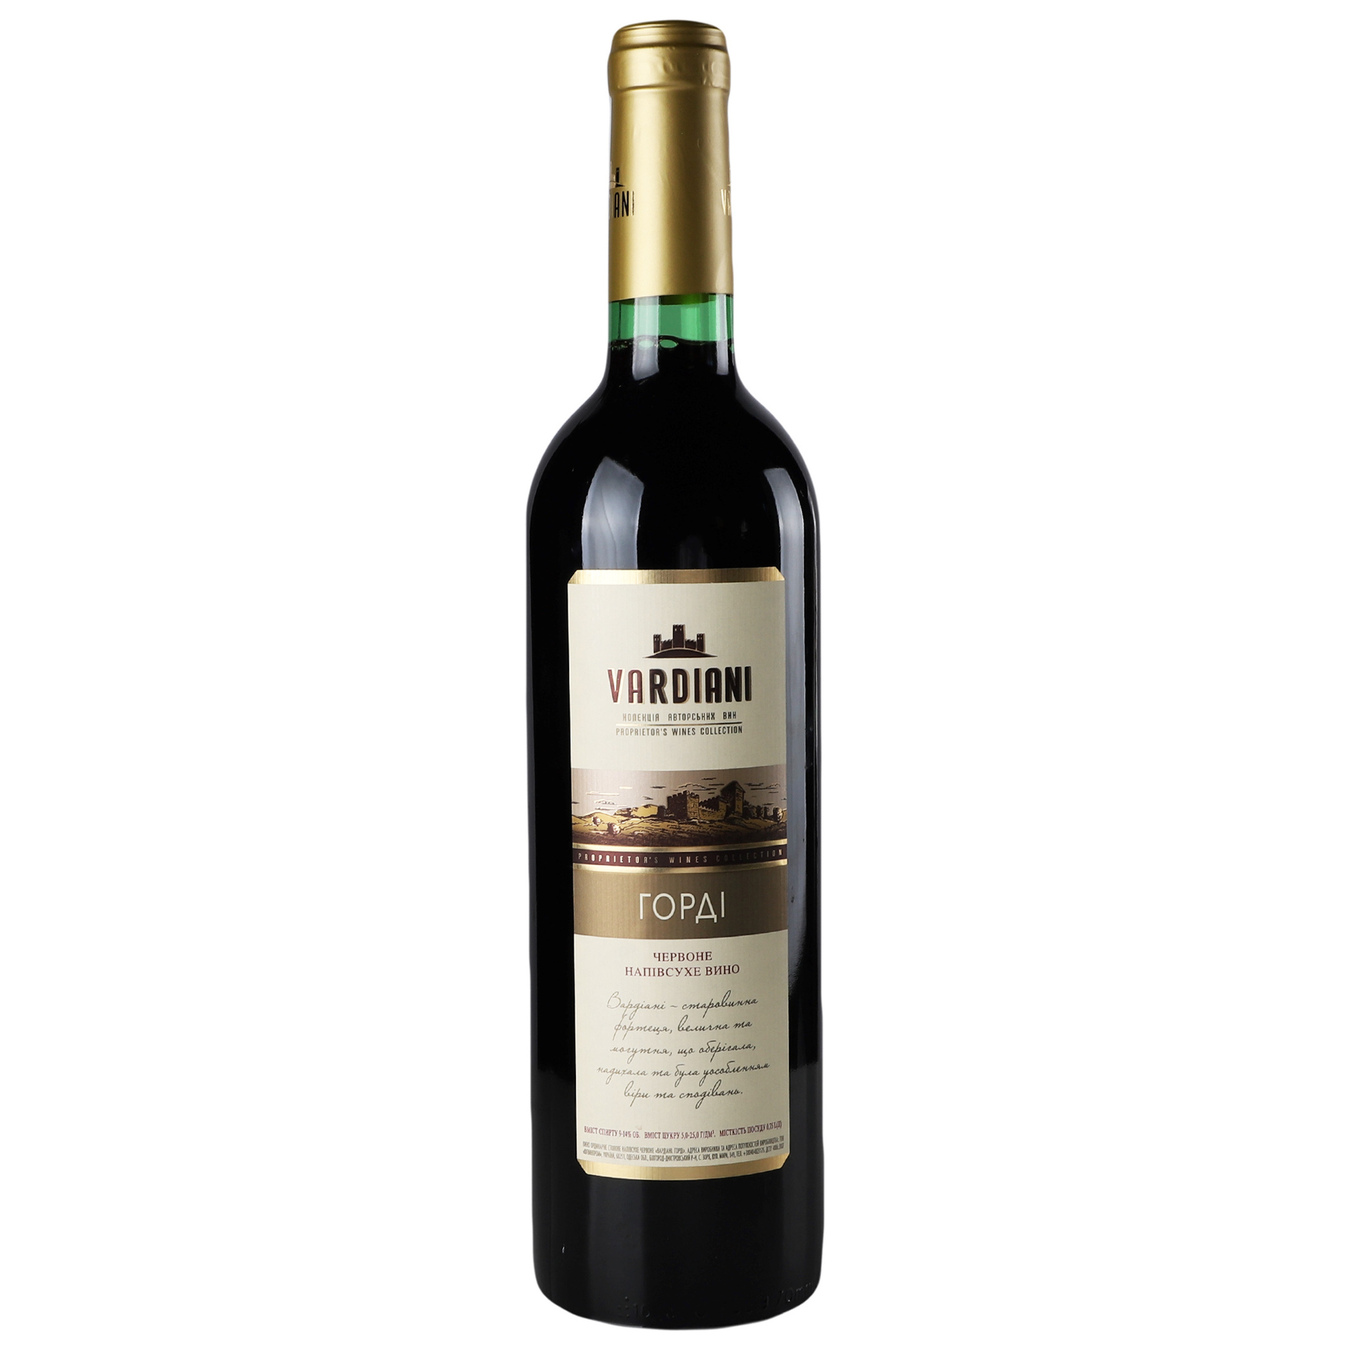 Vardiani Gordi semi-dry red wine 11.2% 0.75 l